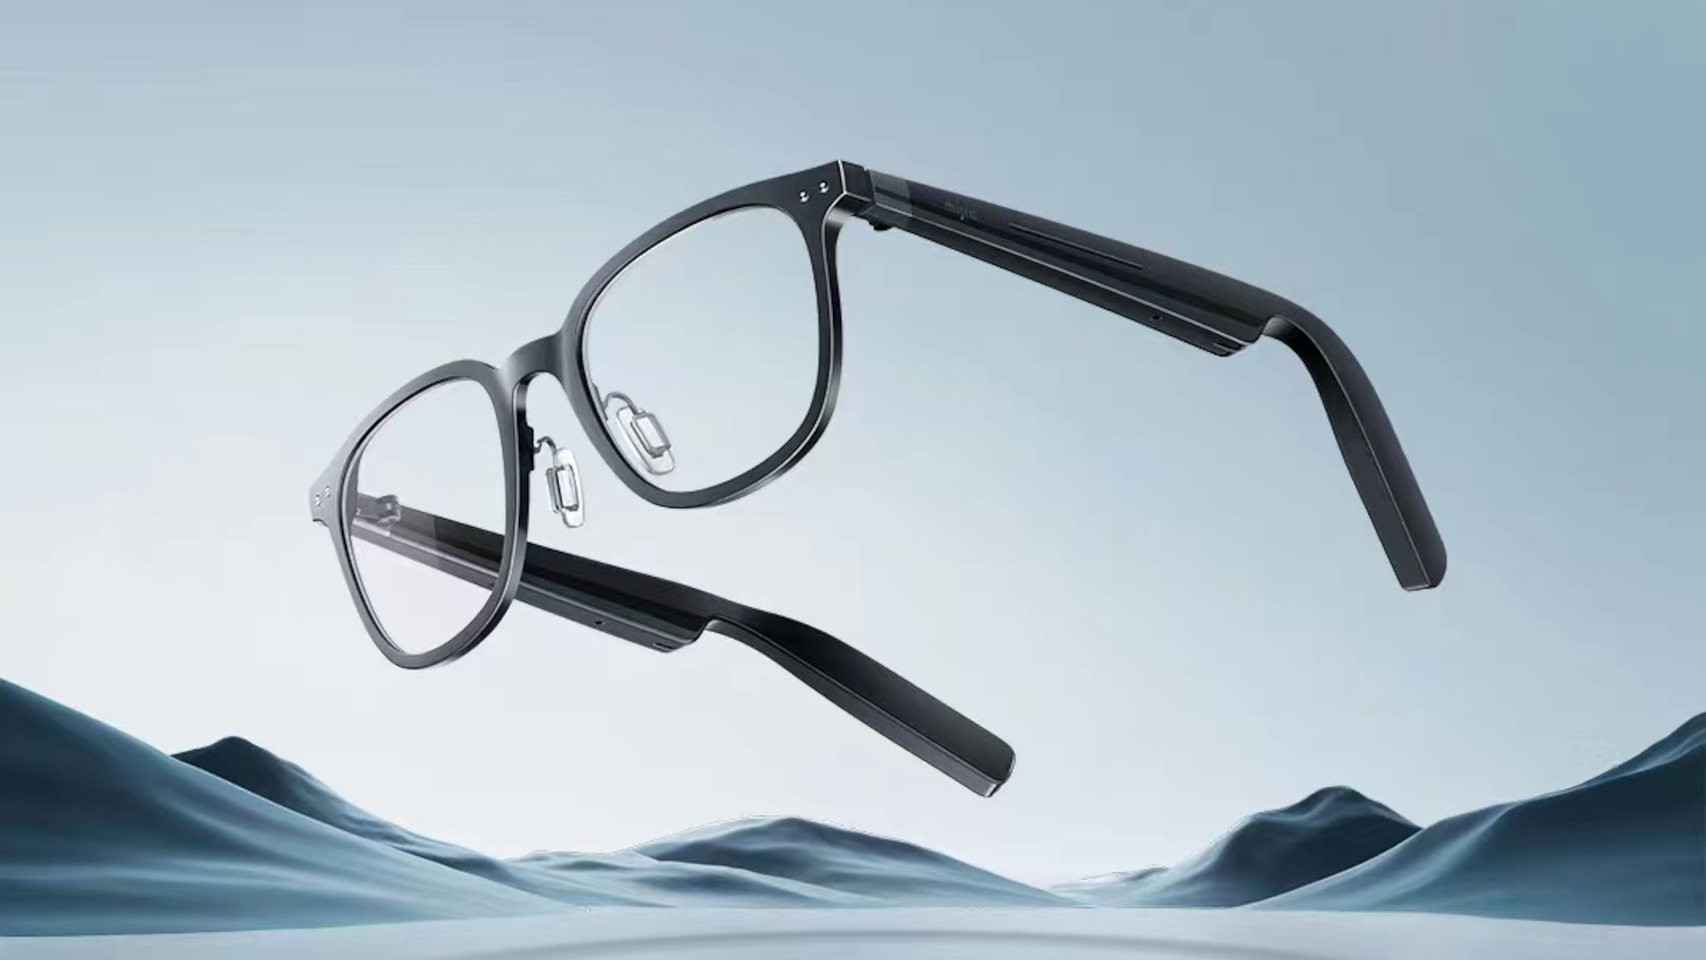 La nueva chulada de Xiaomi son unas gafas inteligentes que parecen